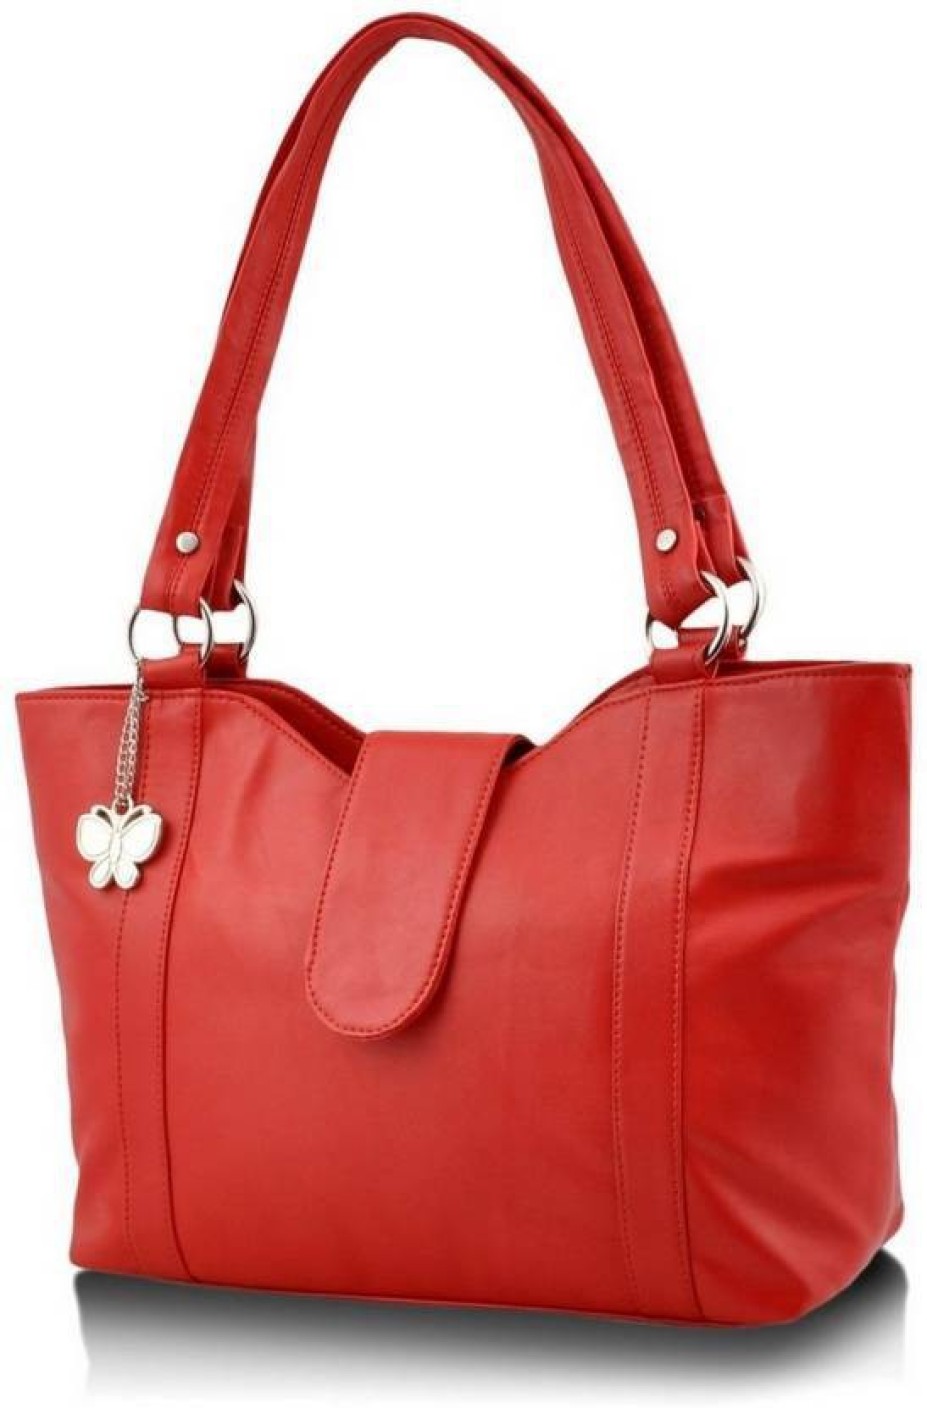 Buy Butterflies Hand-held Bag Red Online @ Best Price in India | www.lvspeedy30.com